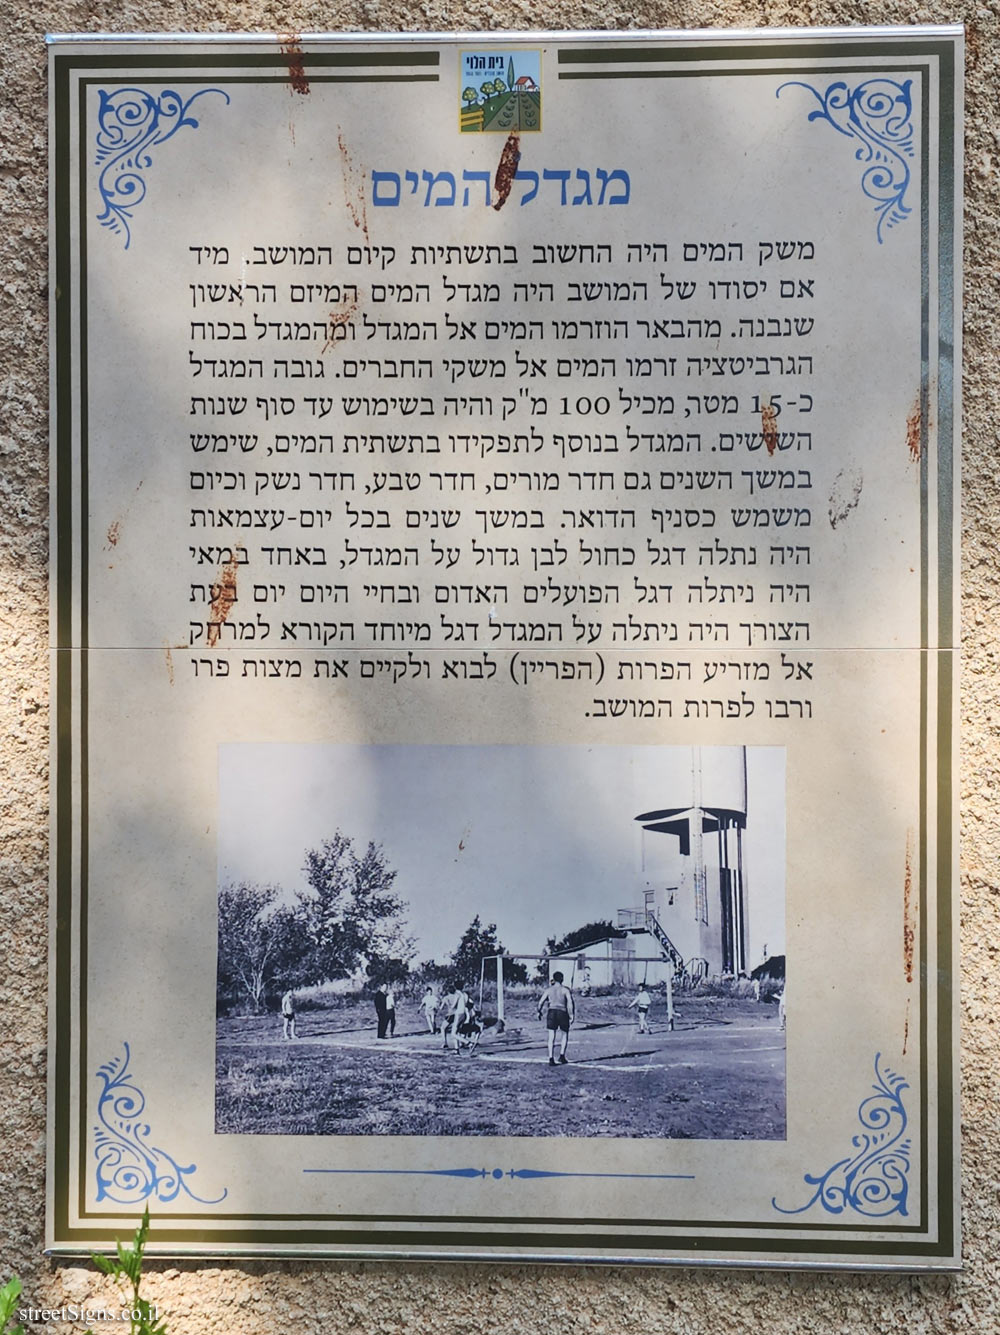 Beit HaLevi - The water tower